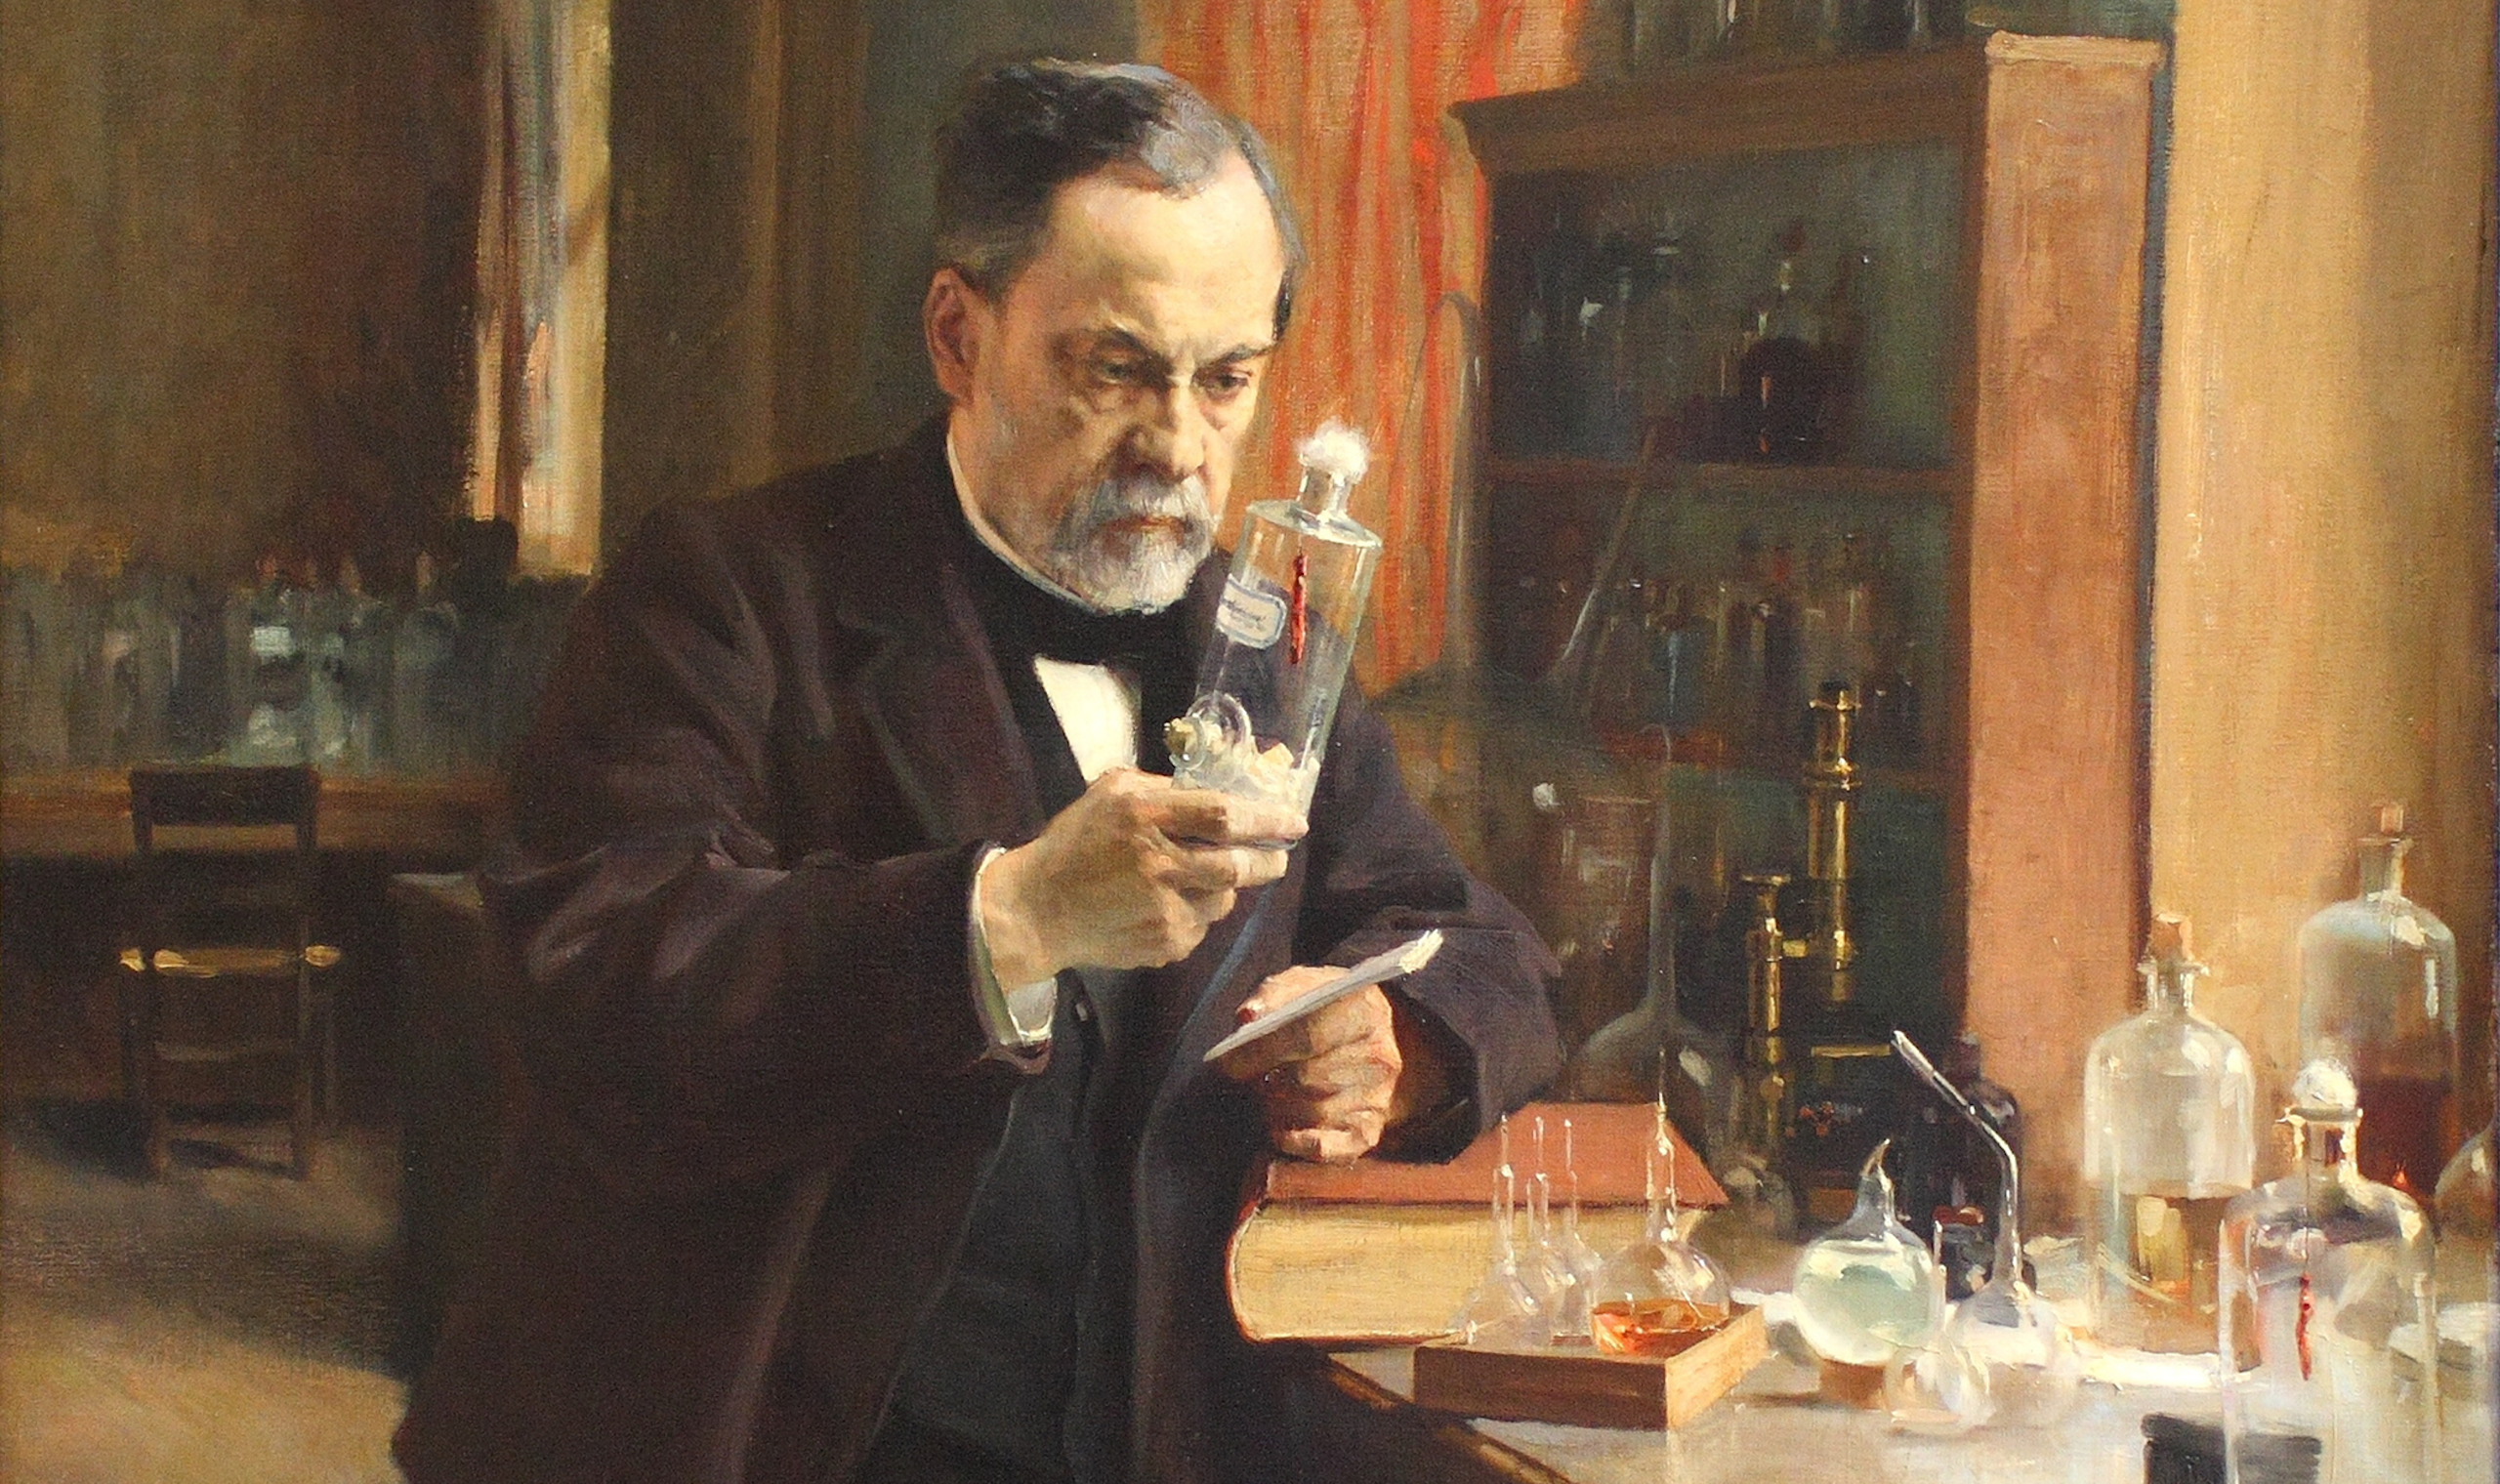 
														
														Kun tarixi: 25-noyabr – Alfred Nobel dinamit uchun patent olgan kun
														
														